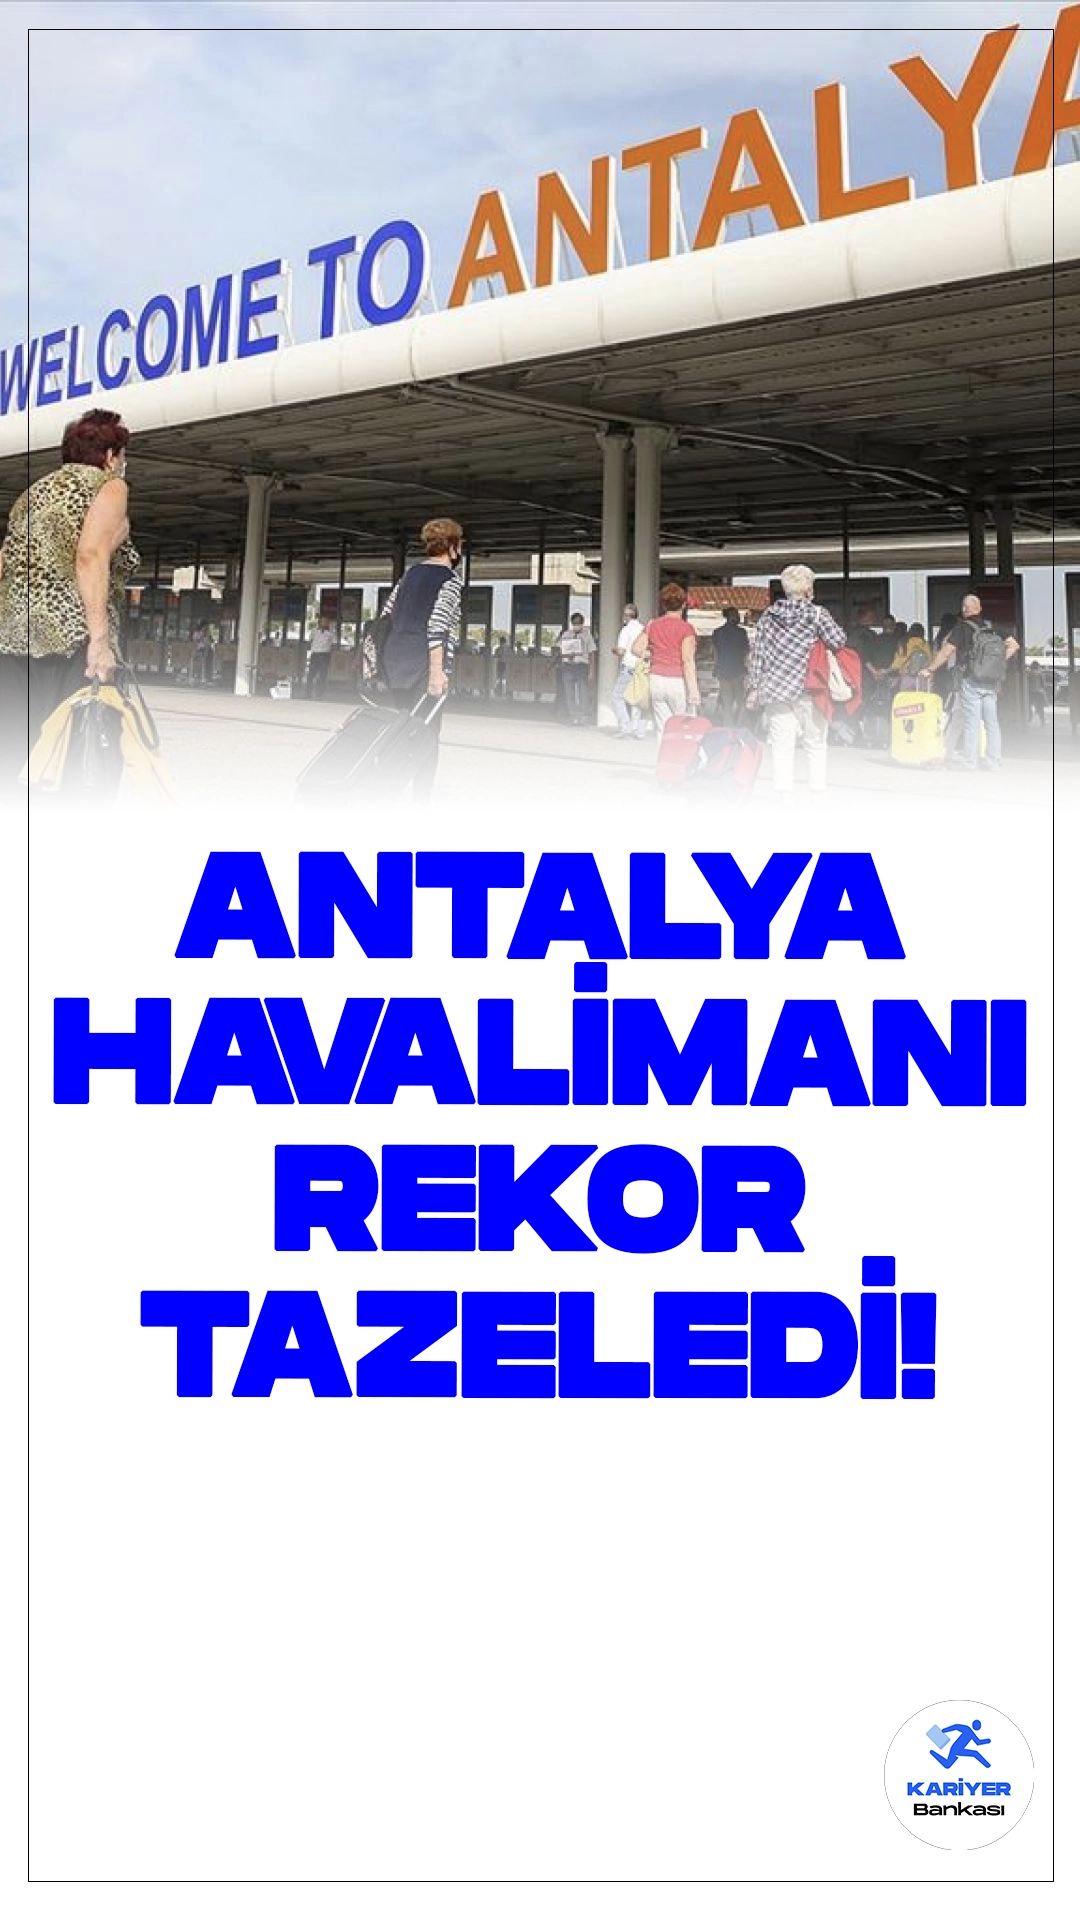 Antalya Havalimanı Rekor Tazeledi.Antalya Havalimanı, dün 209 bin 540 yolcu ile 2024'ün en yüksek rakamına ulaştı.Antalya Havalimanı Rekor Tazeledi.Antalya Havalimanı, dün 209 bin 540 yolcu ile 2024'ün en yüksek rakamına ulaştı.